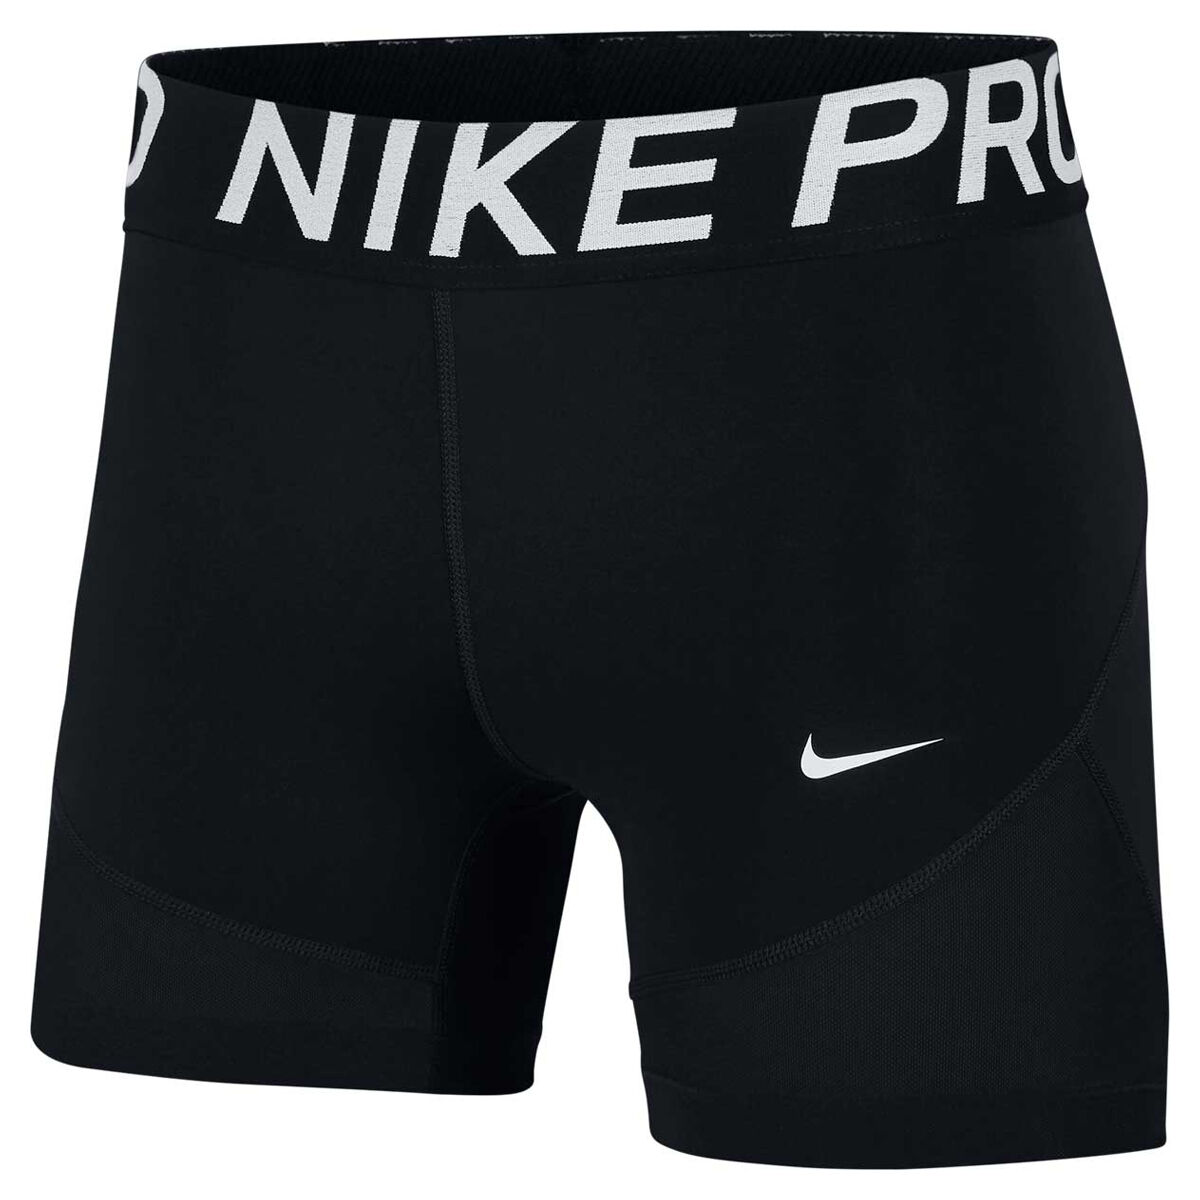 nike pro shorts size 10